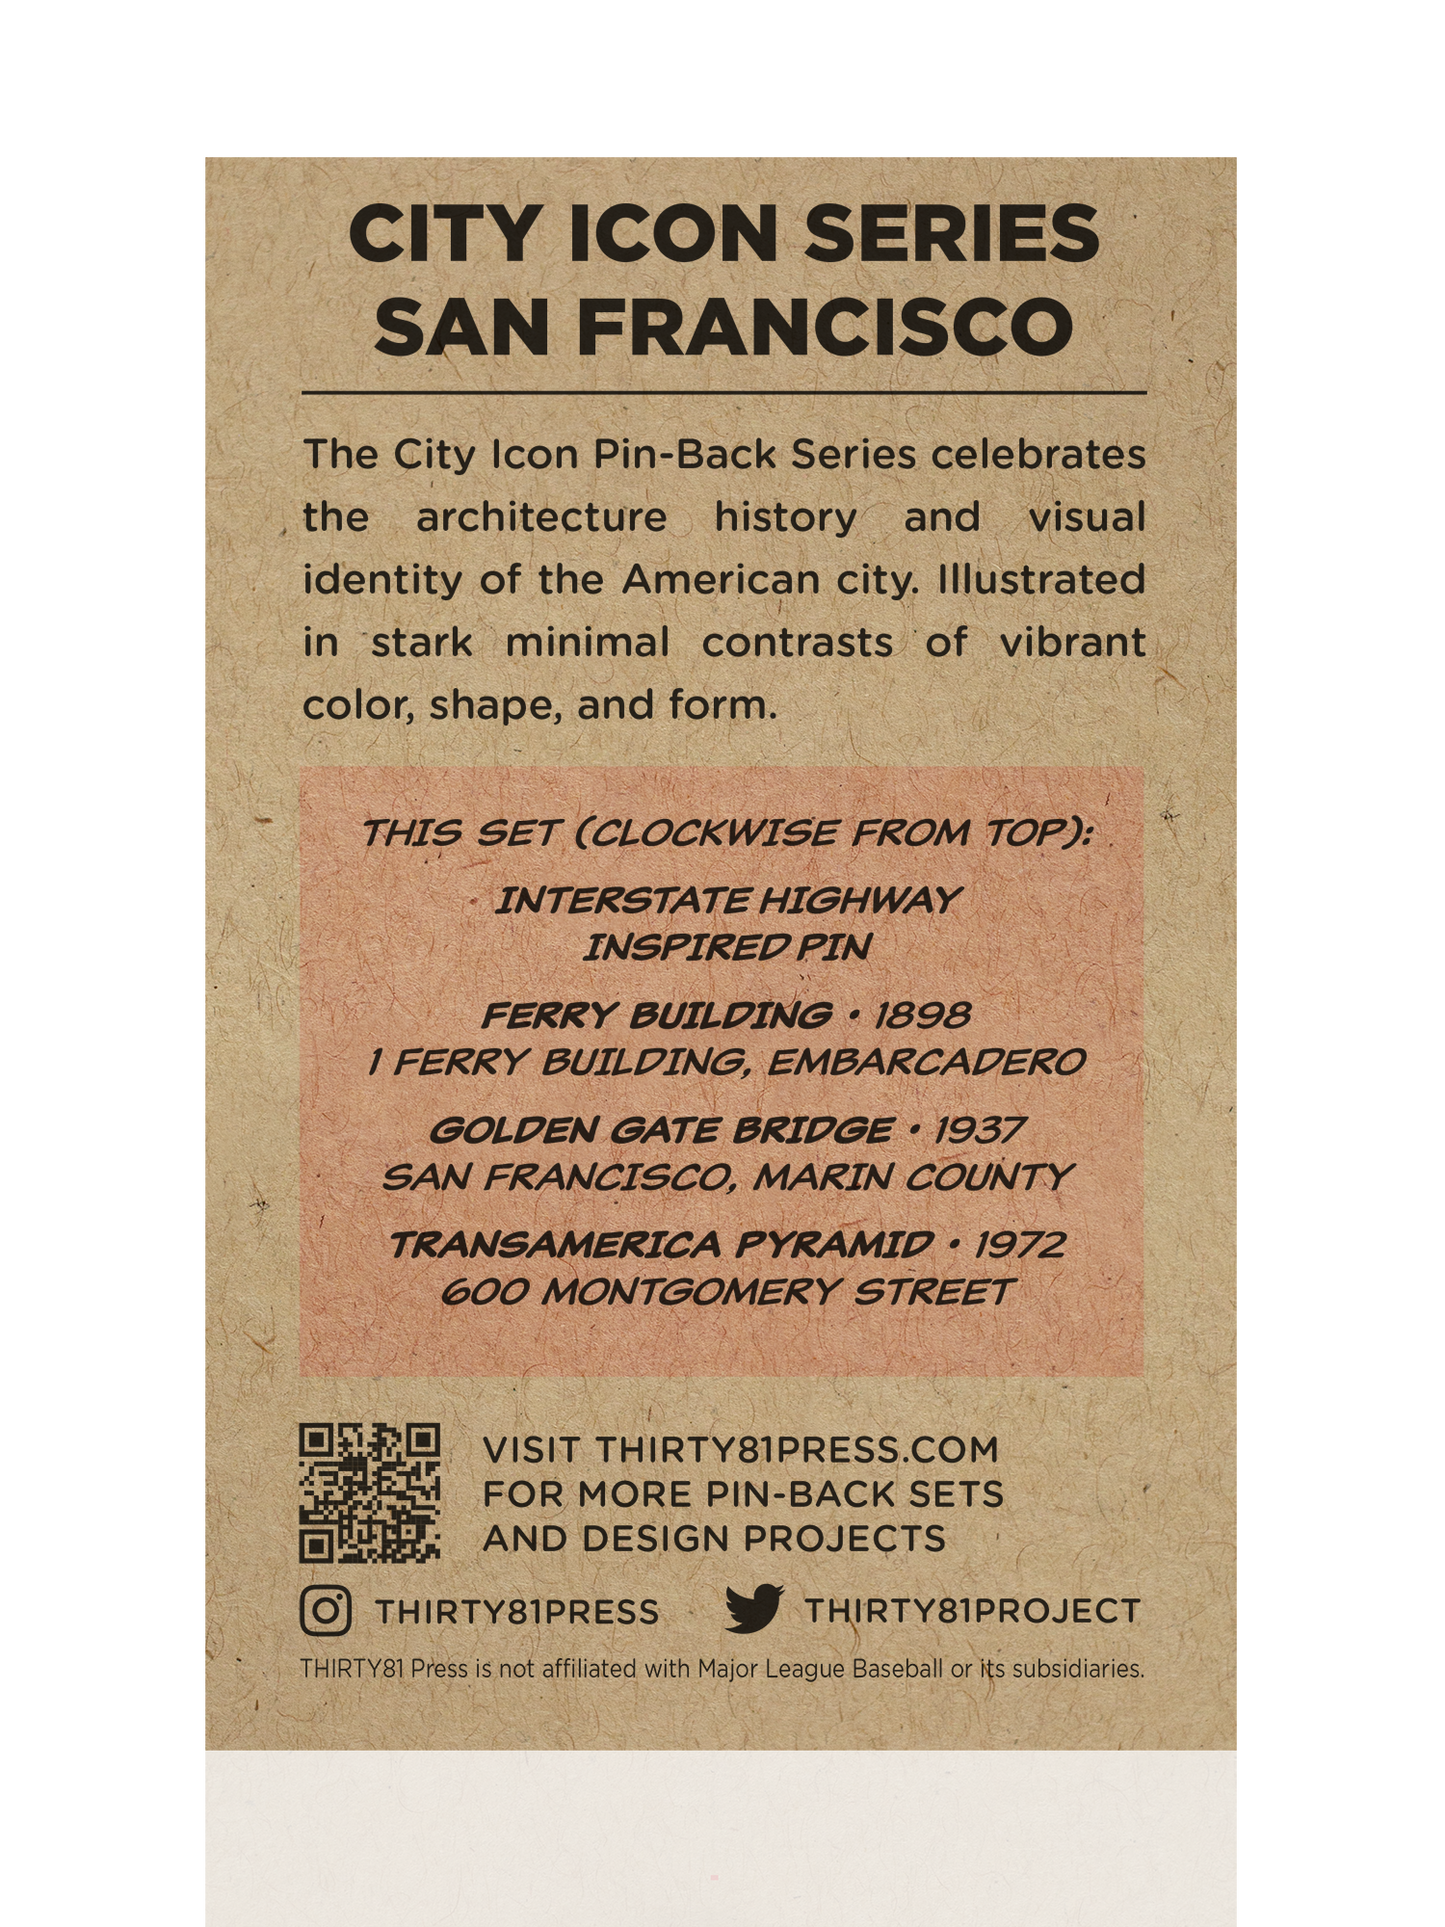 City Icons: San Francisco Pin-Back Set